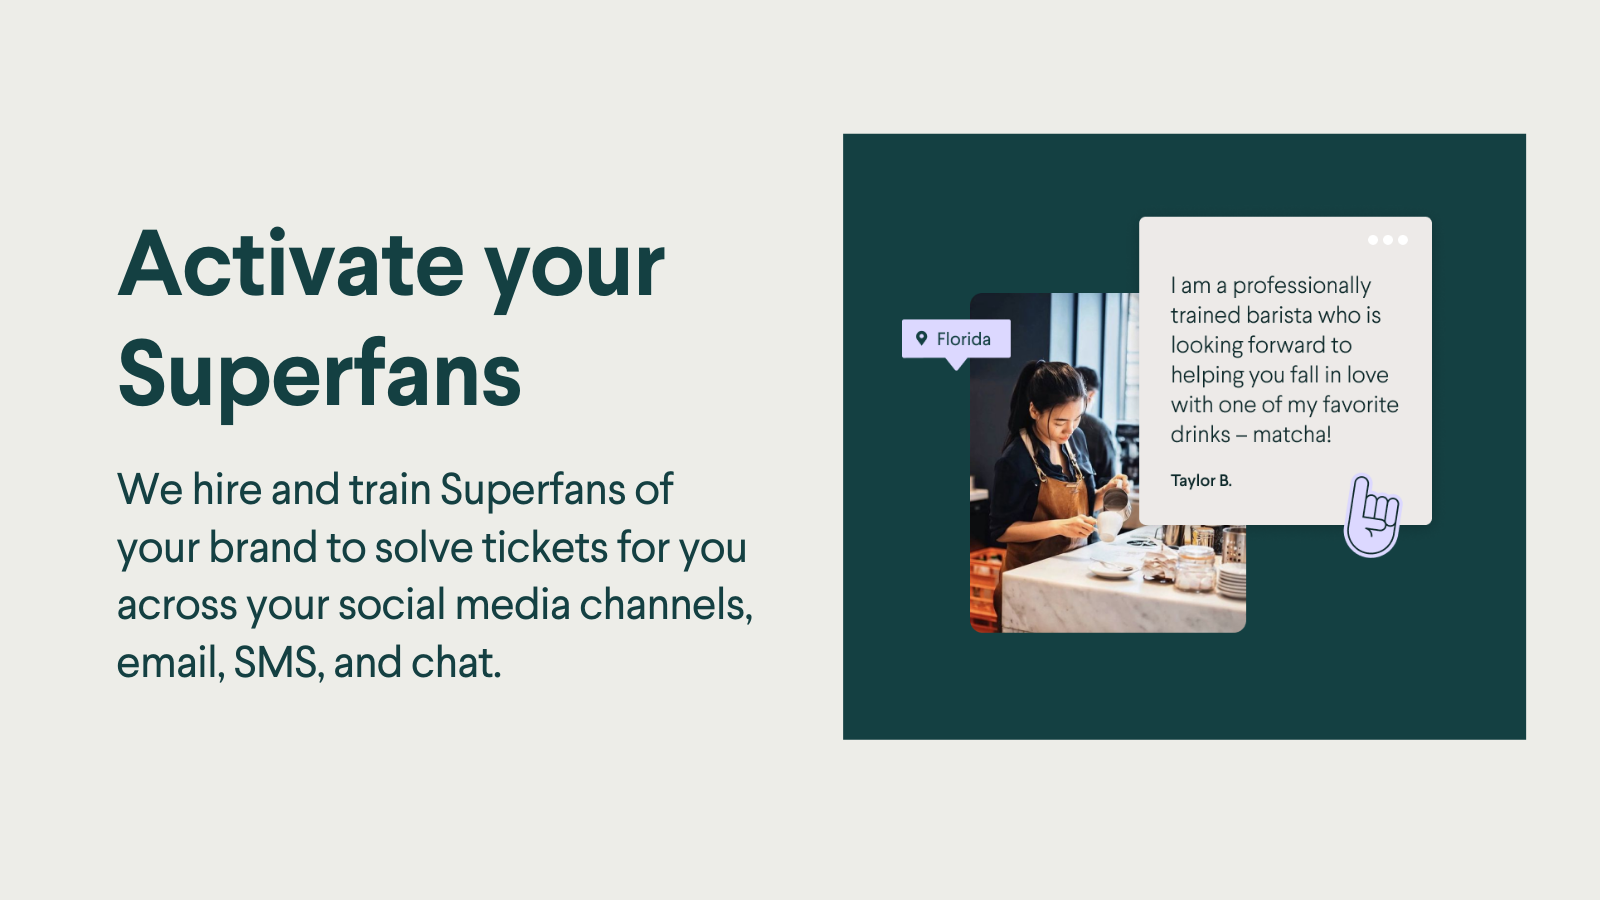 Wir schulen Superfans Ihrer Marke, um Tickets für Sie zu lösen